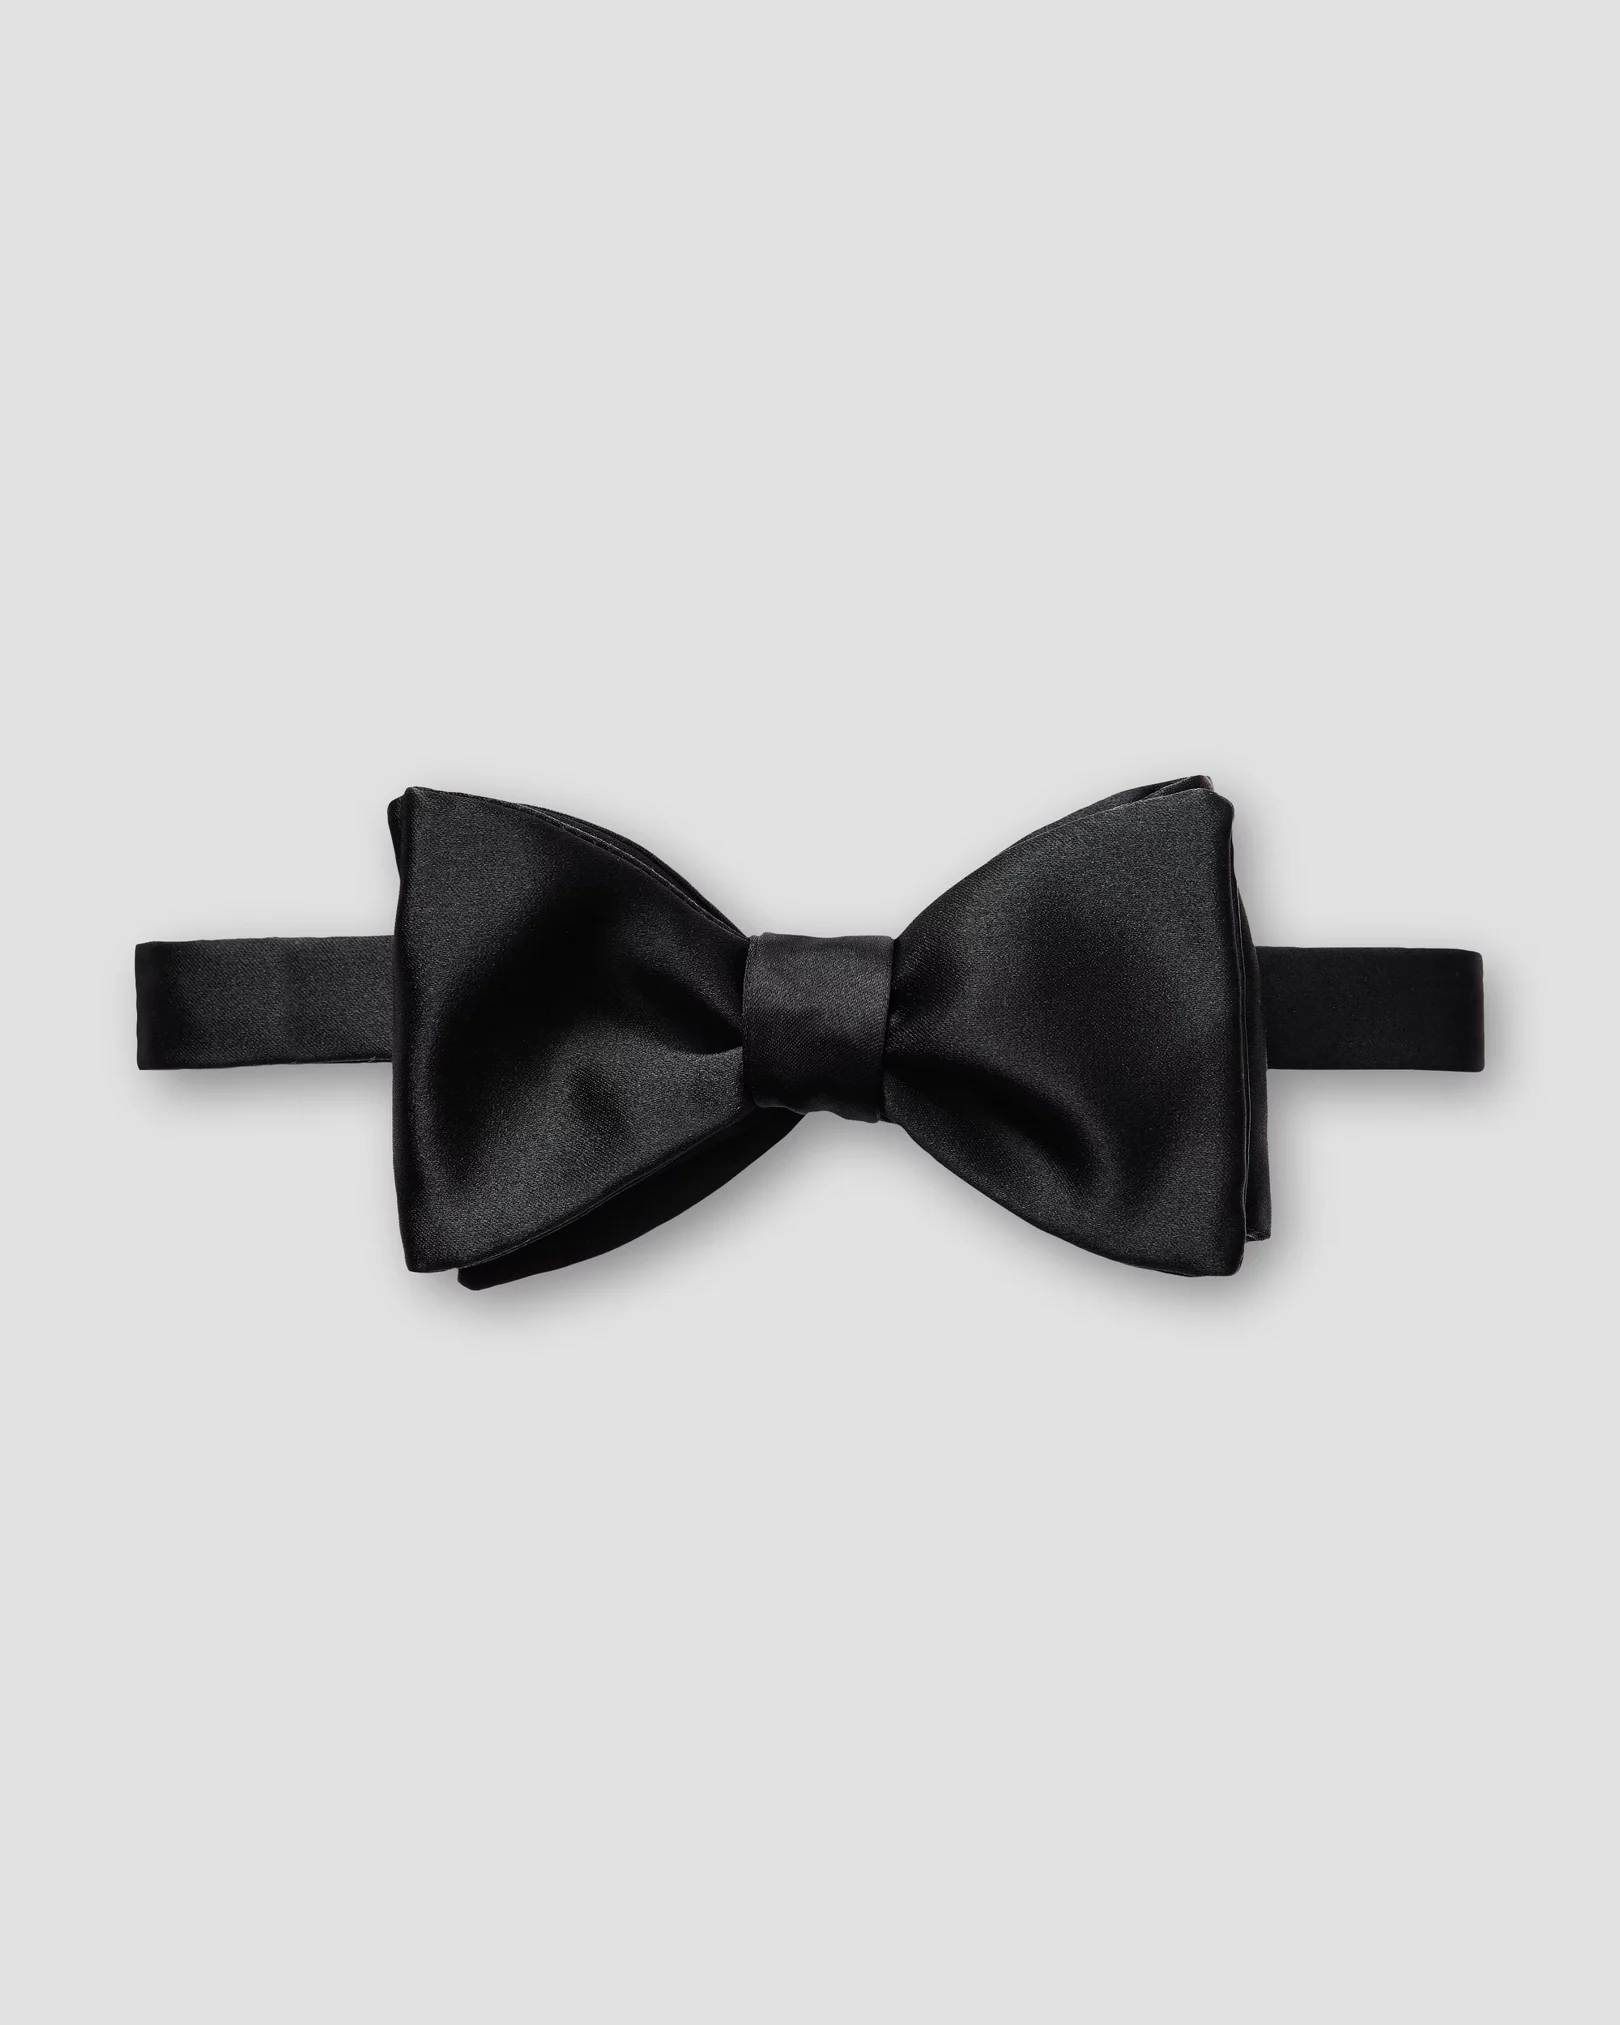 Eton - black bow tie ready tied